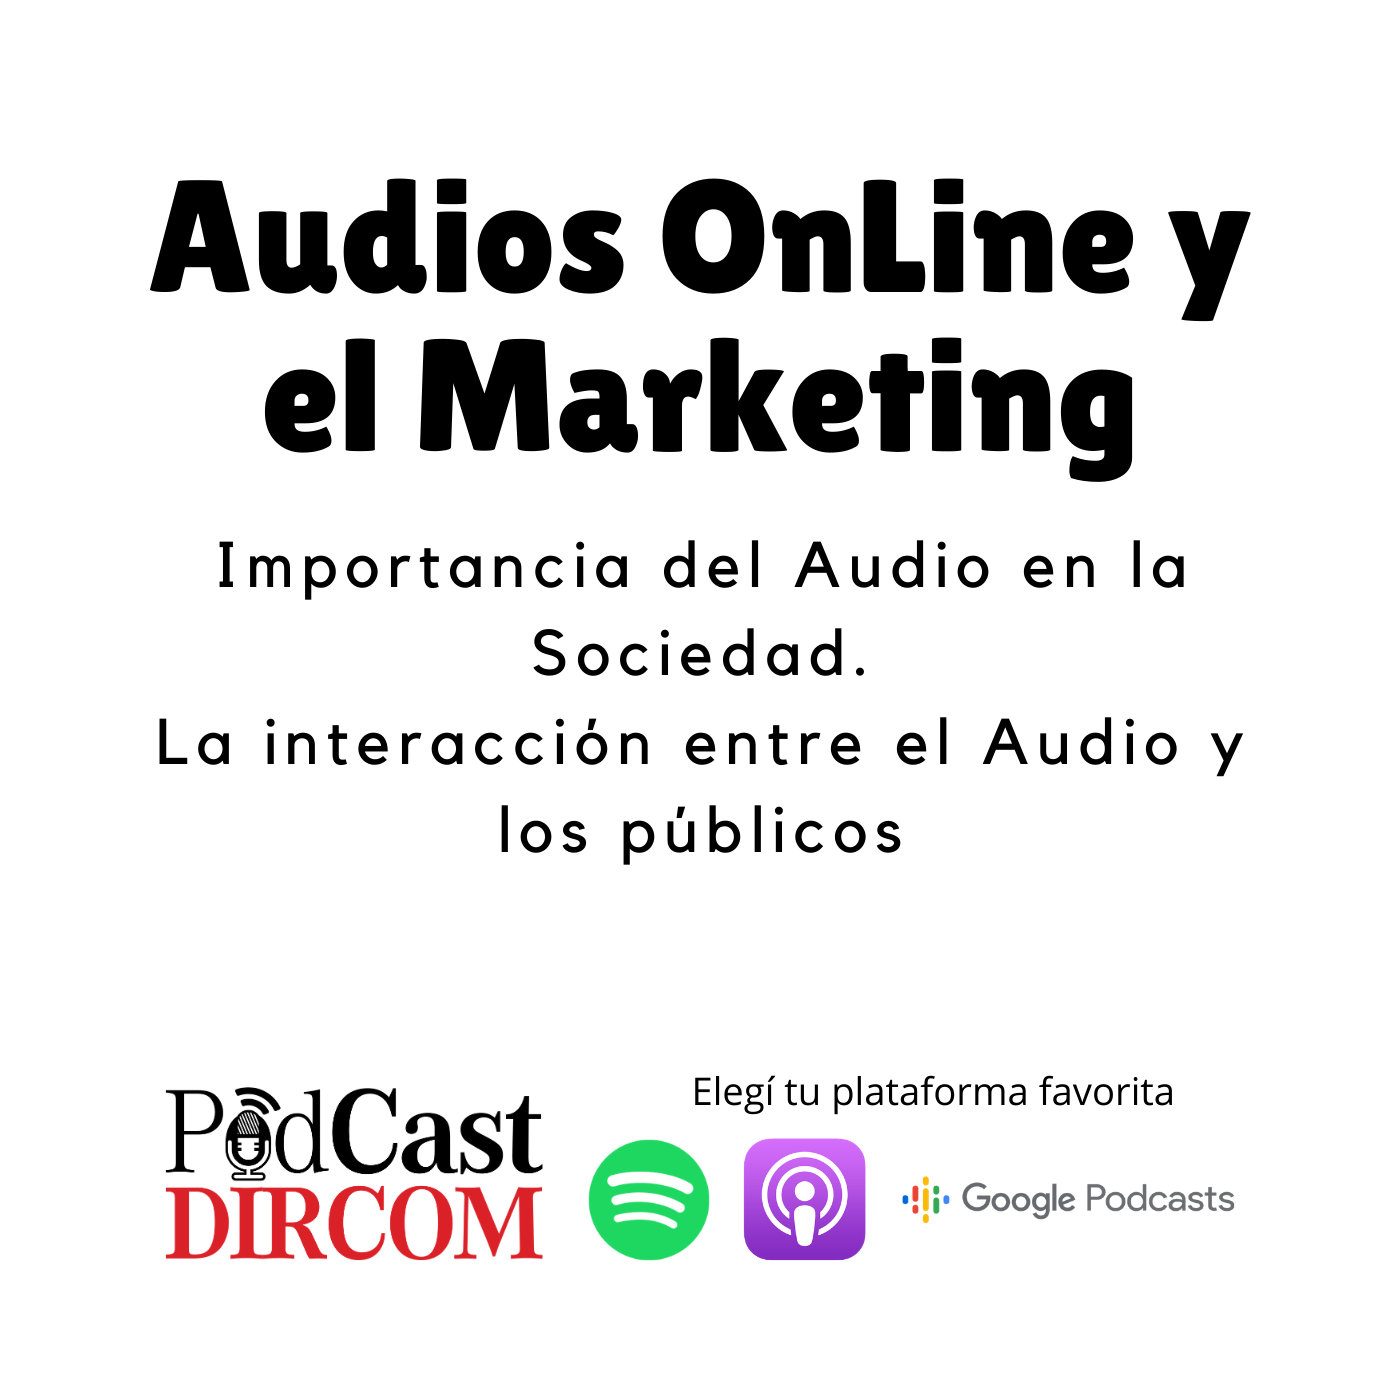 Audios OnLine y el Marketing